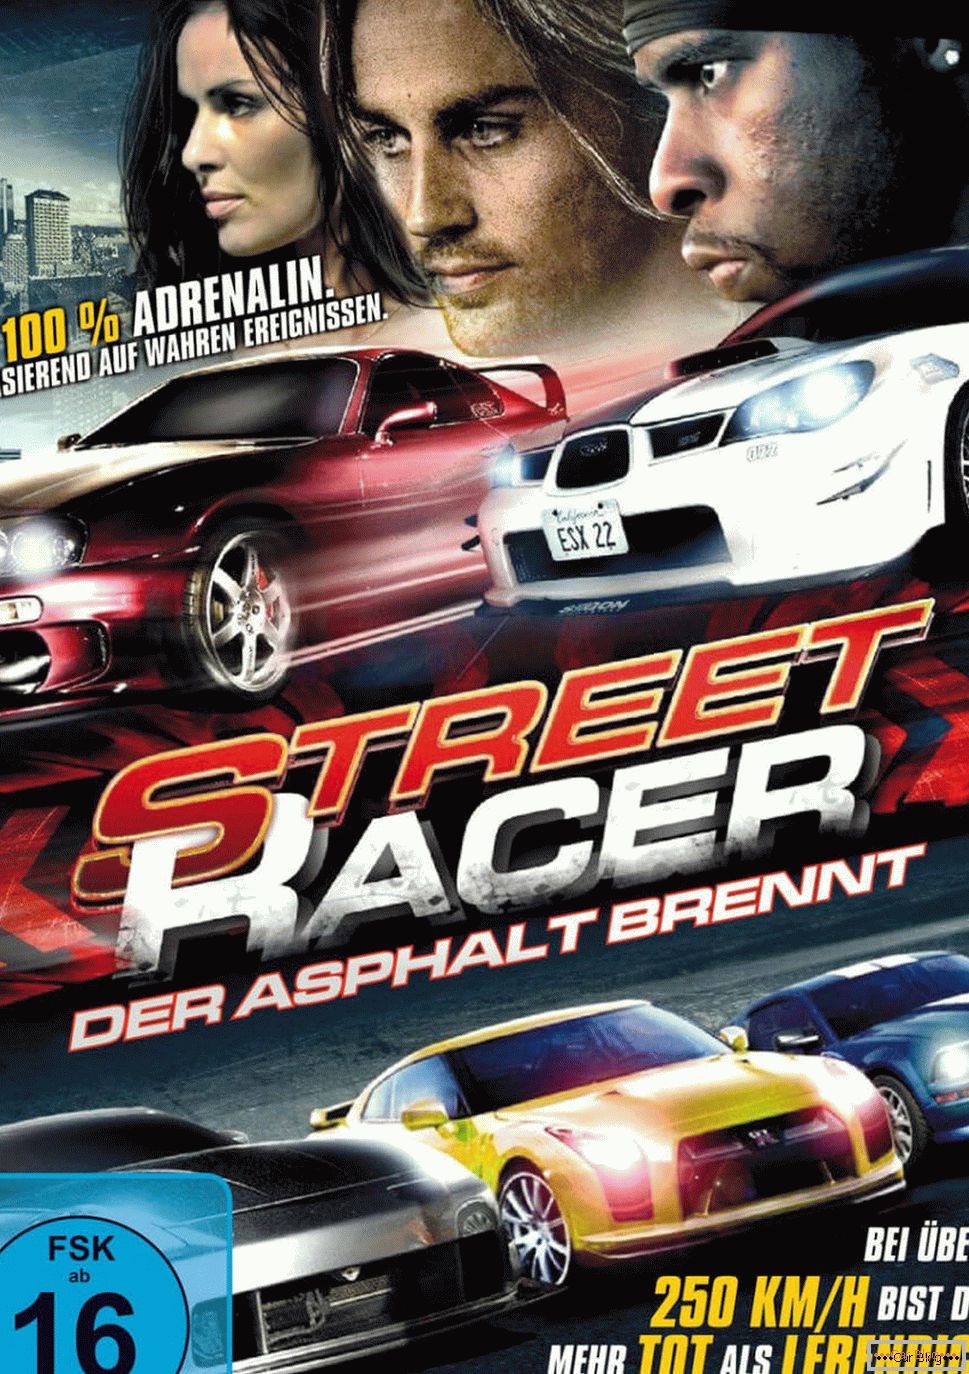 Plakat do filmu Street racer